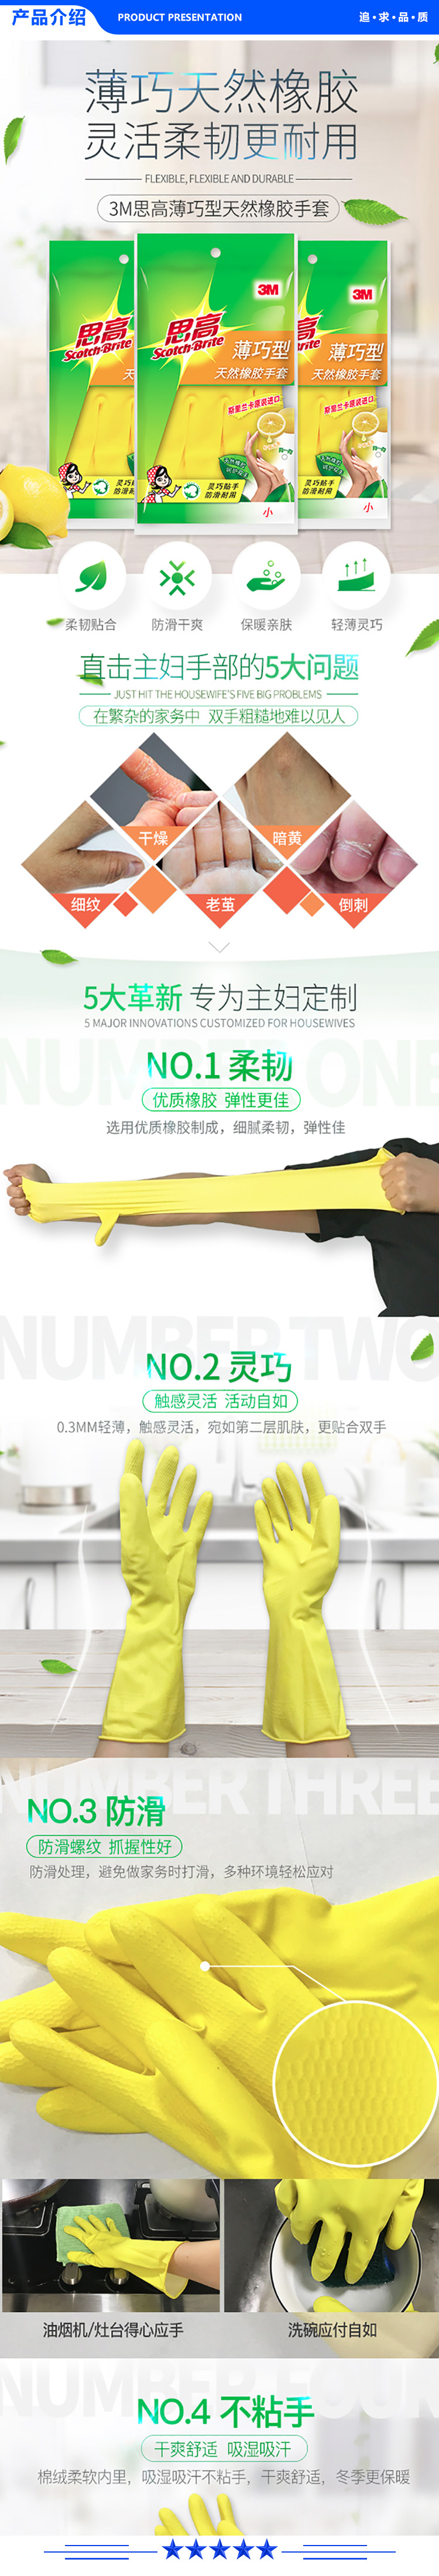 3M 橡胶手套 薄巧型防水防滑家务清洁手套 厨房洗衣手套小号 柠檬黄.jpg